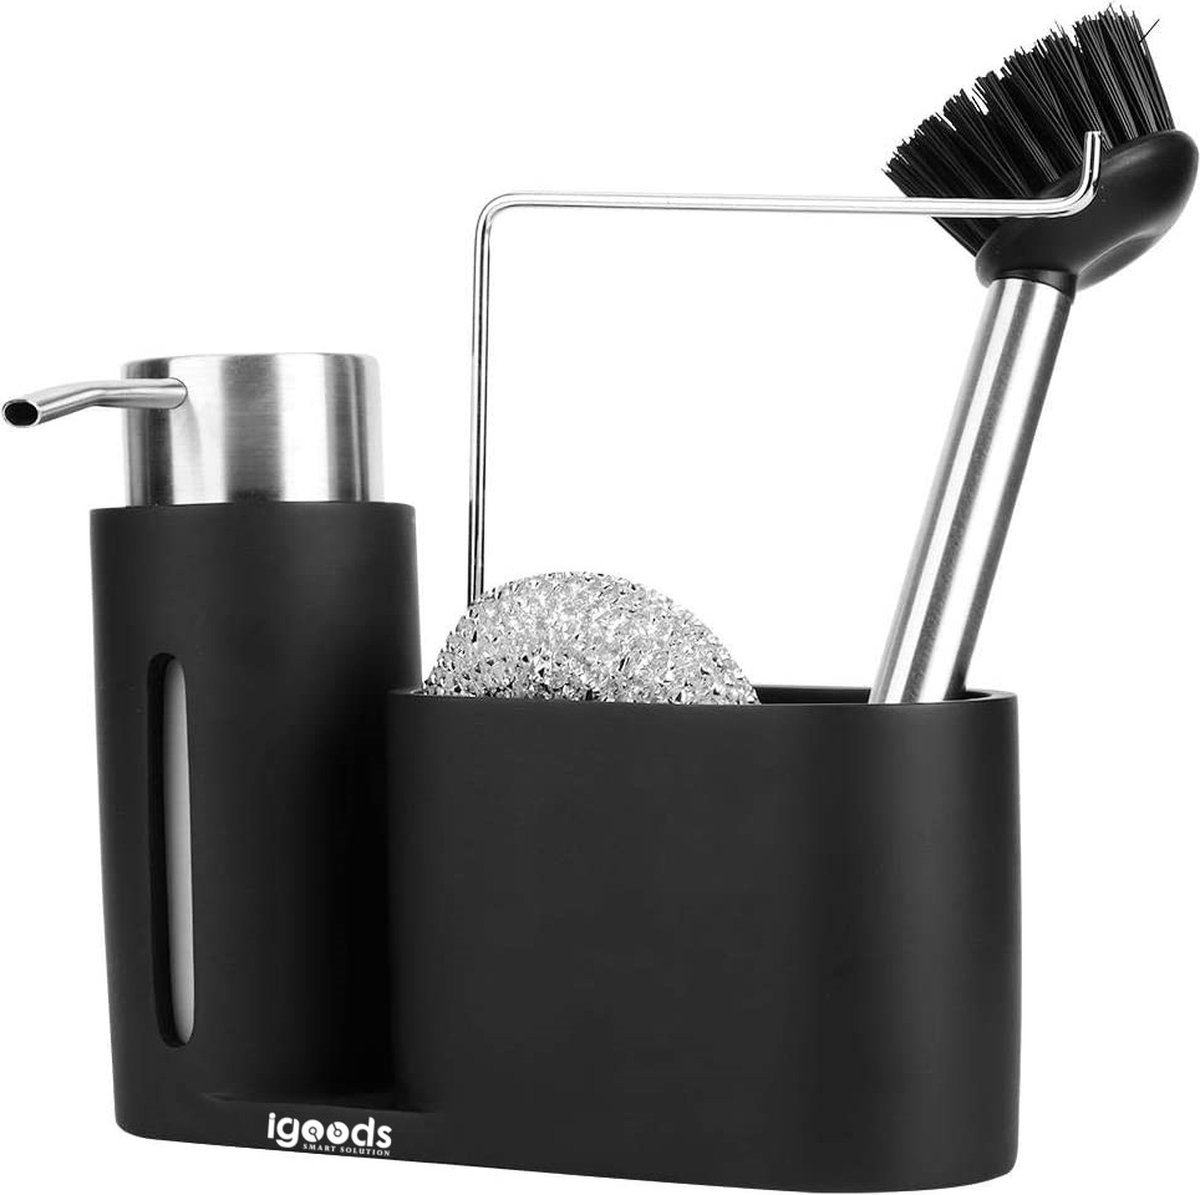 Igoods Zeep Pompje Set - Dispenser Set - Hygiene Set - Badkamer Bak - Inclusief Schuurspons & Schoonmaakborstel